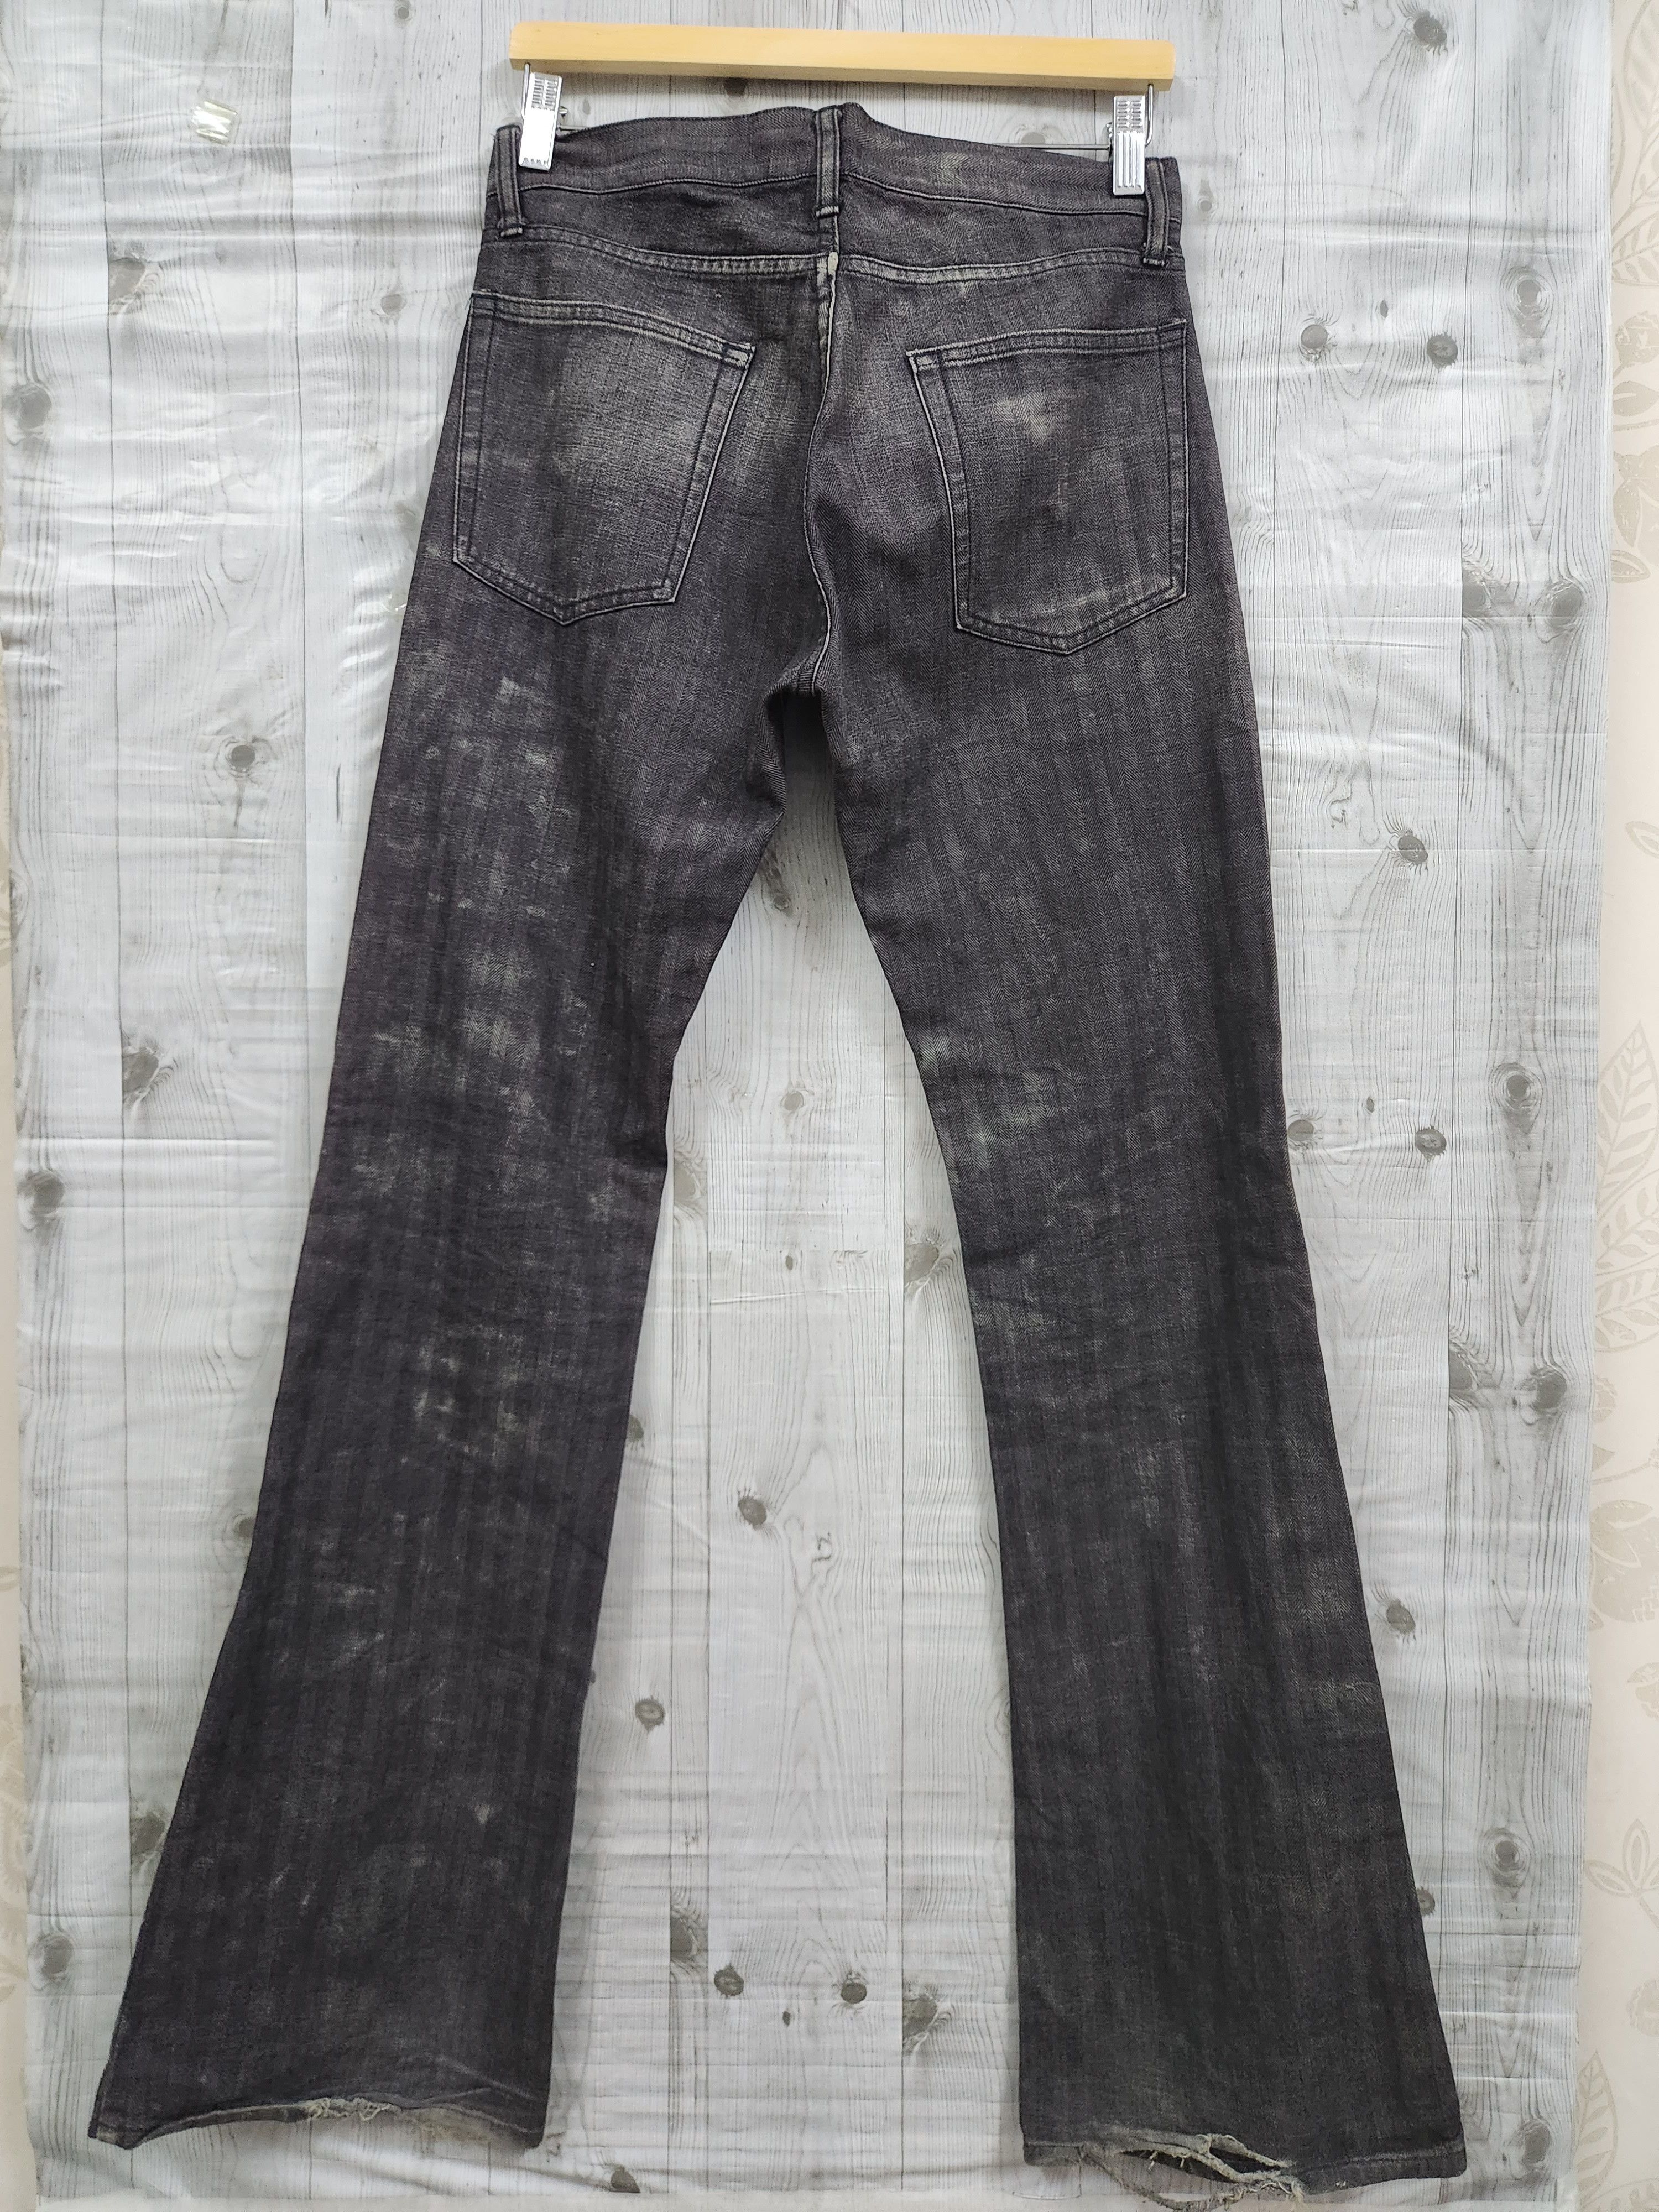 Japanese Brand - Flared Edge Rupert Denim Japan Jeans 70s Style - 19